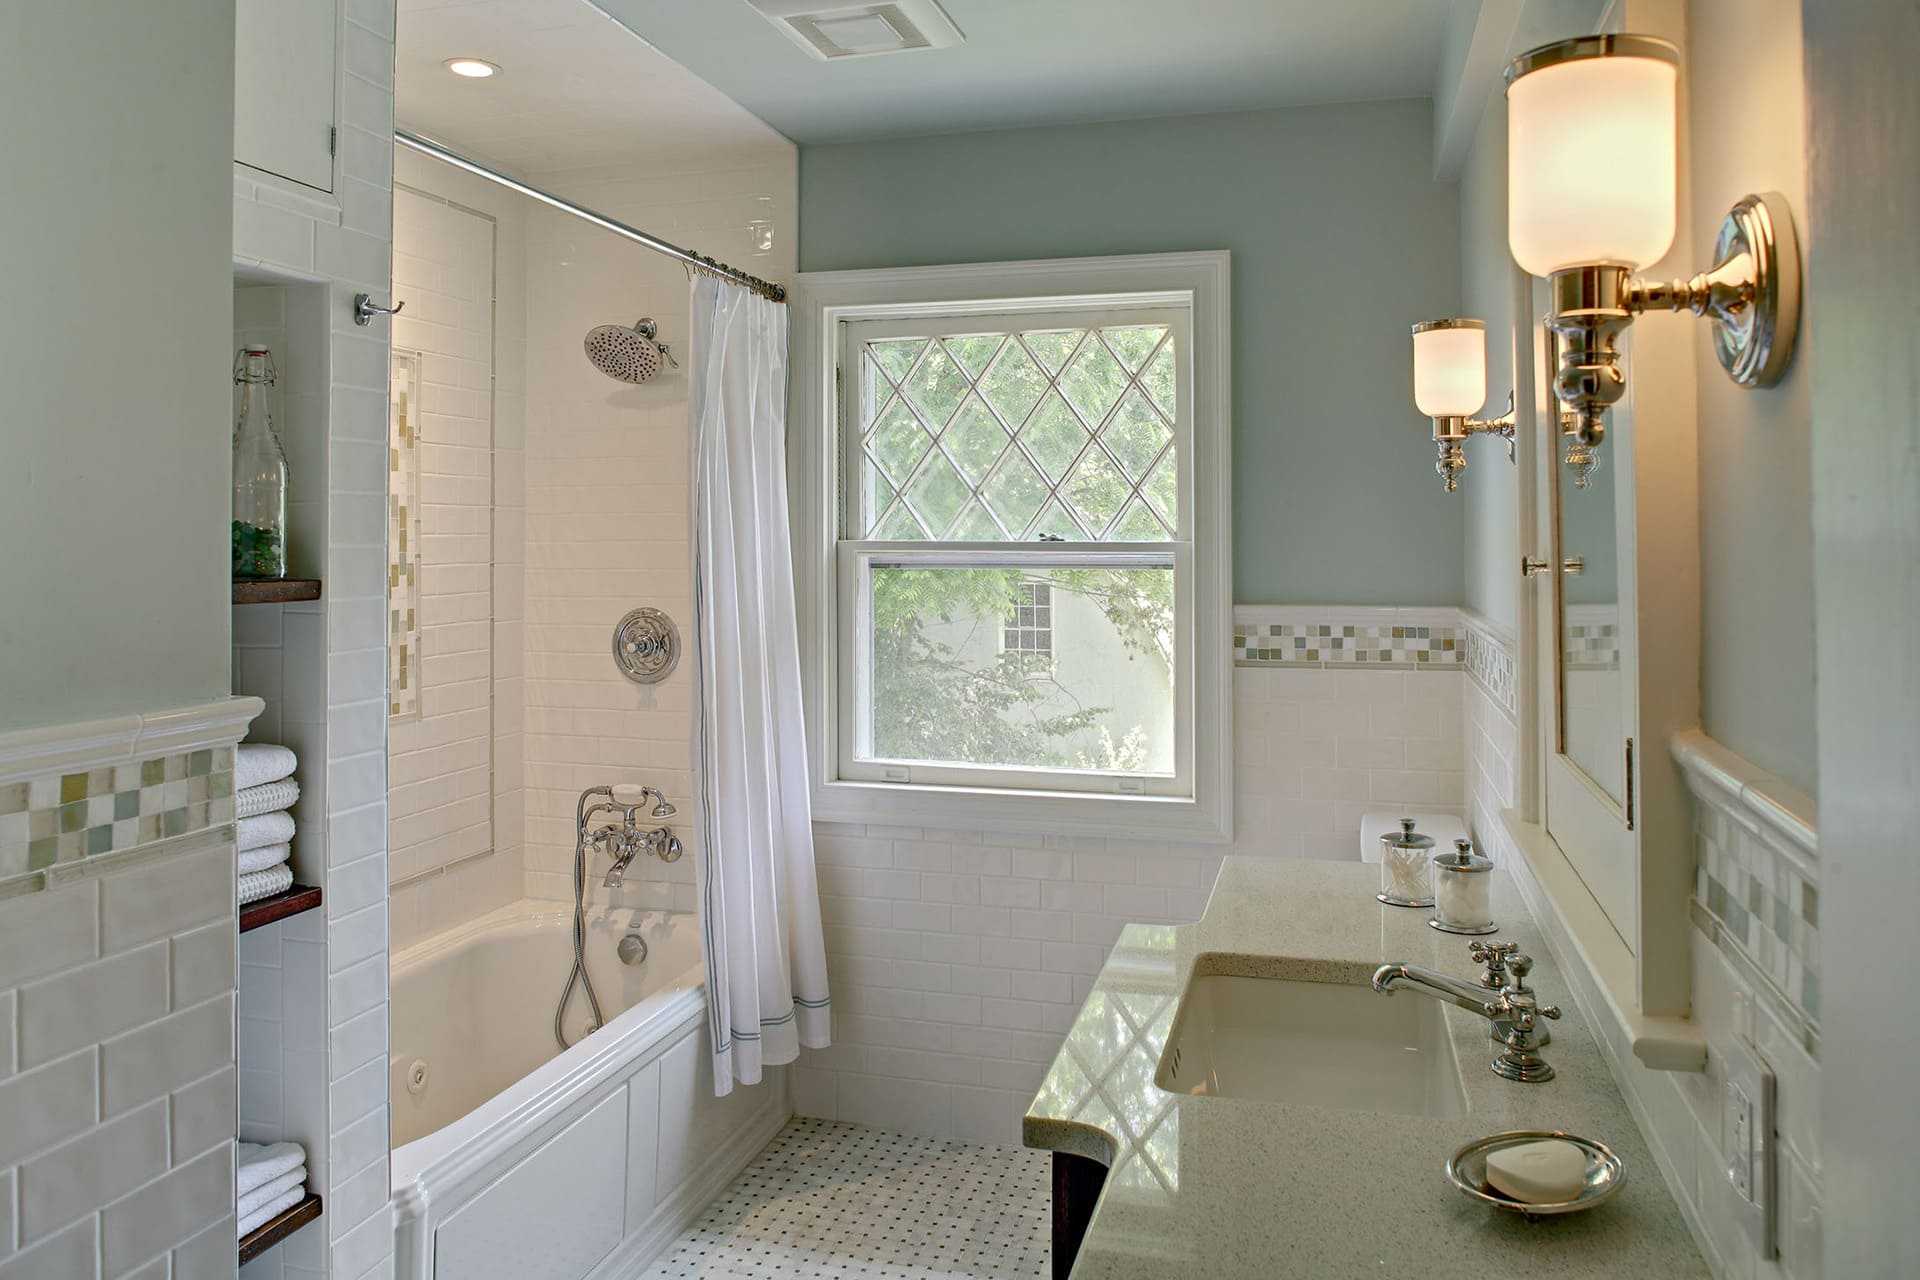 Хотя на фото стиль прованс хорош, для реальных ванных комнат в квартирах его нужно адаптировать, тк все классические стили изначально не практичны